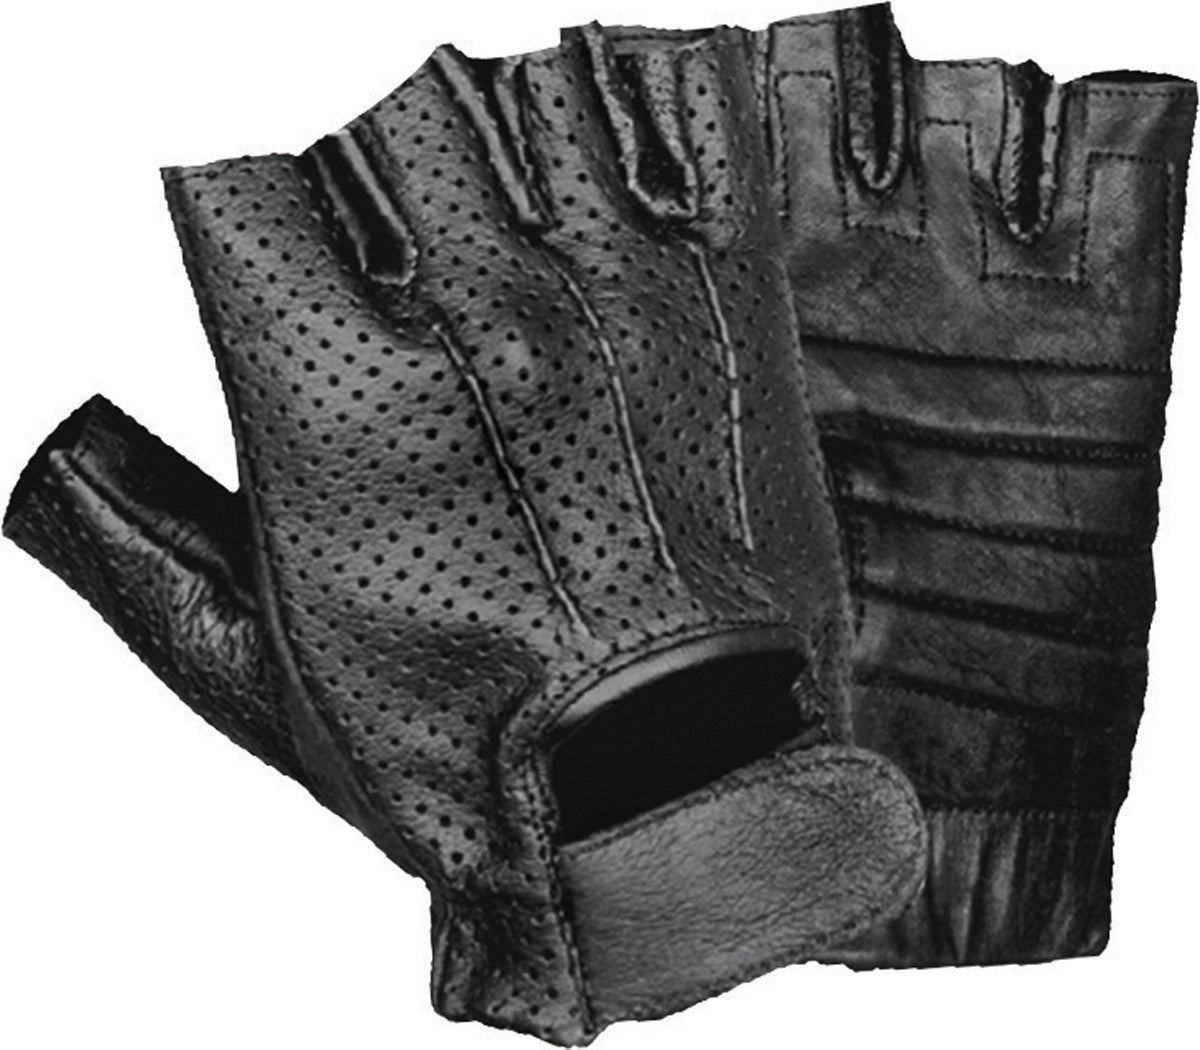 Men's Fingerless Leather Gloves